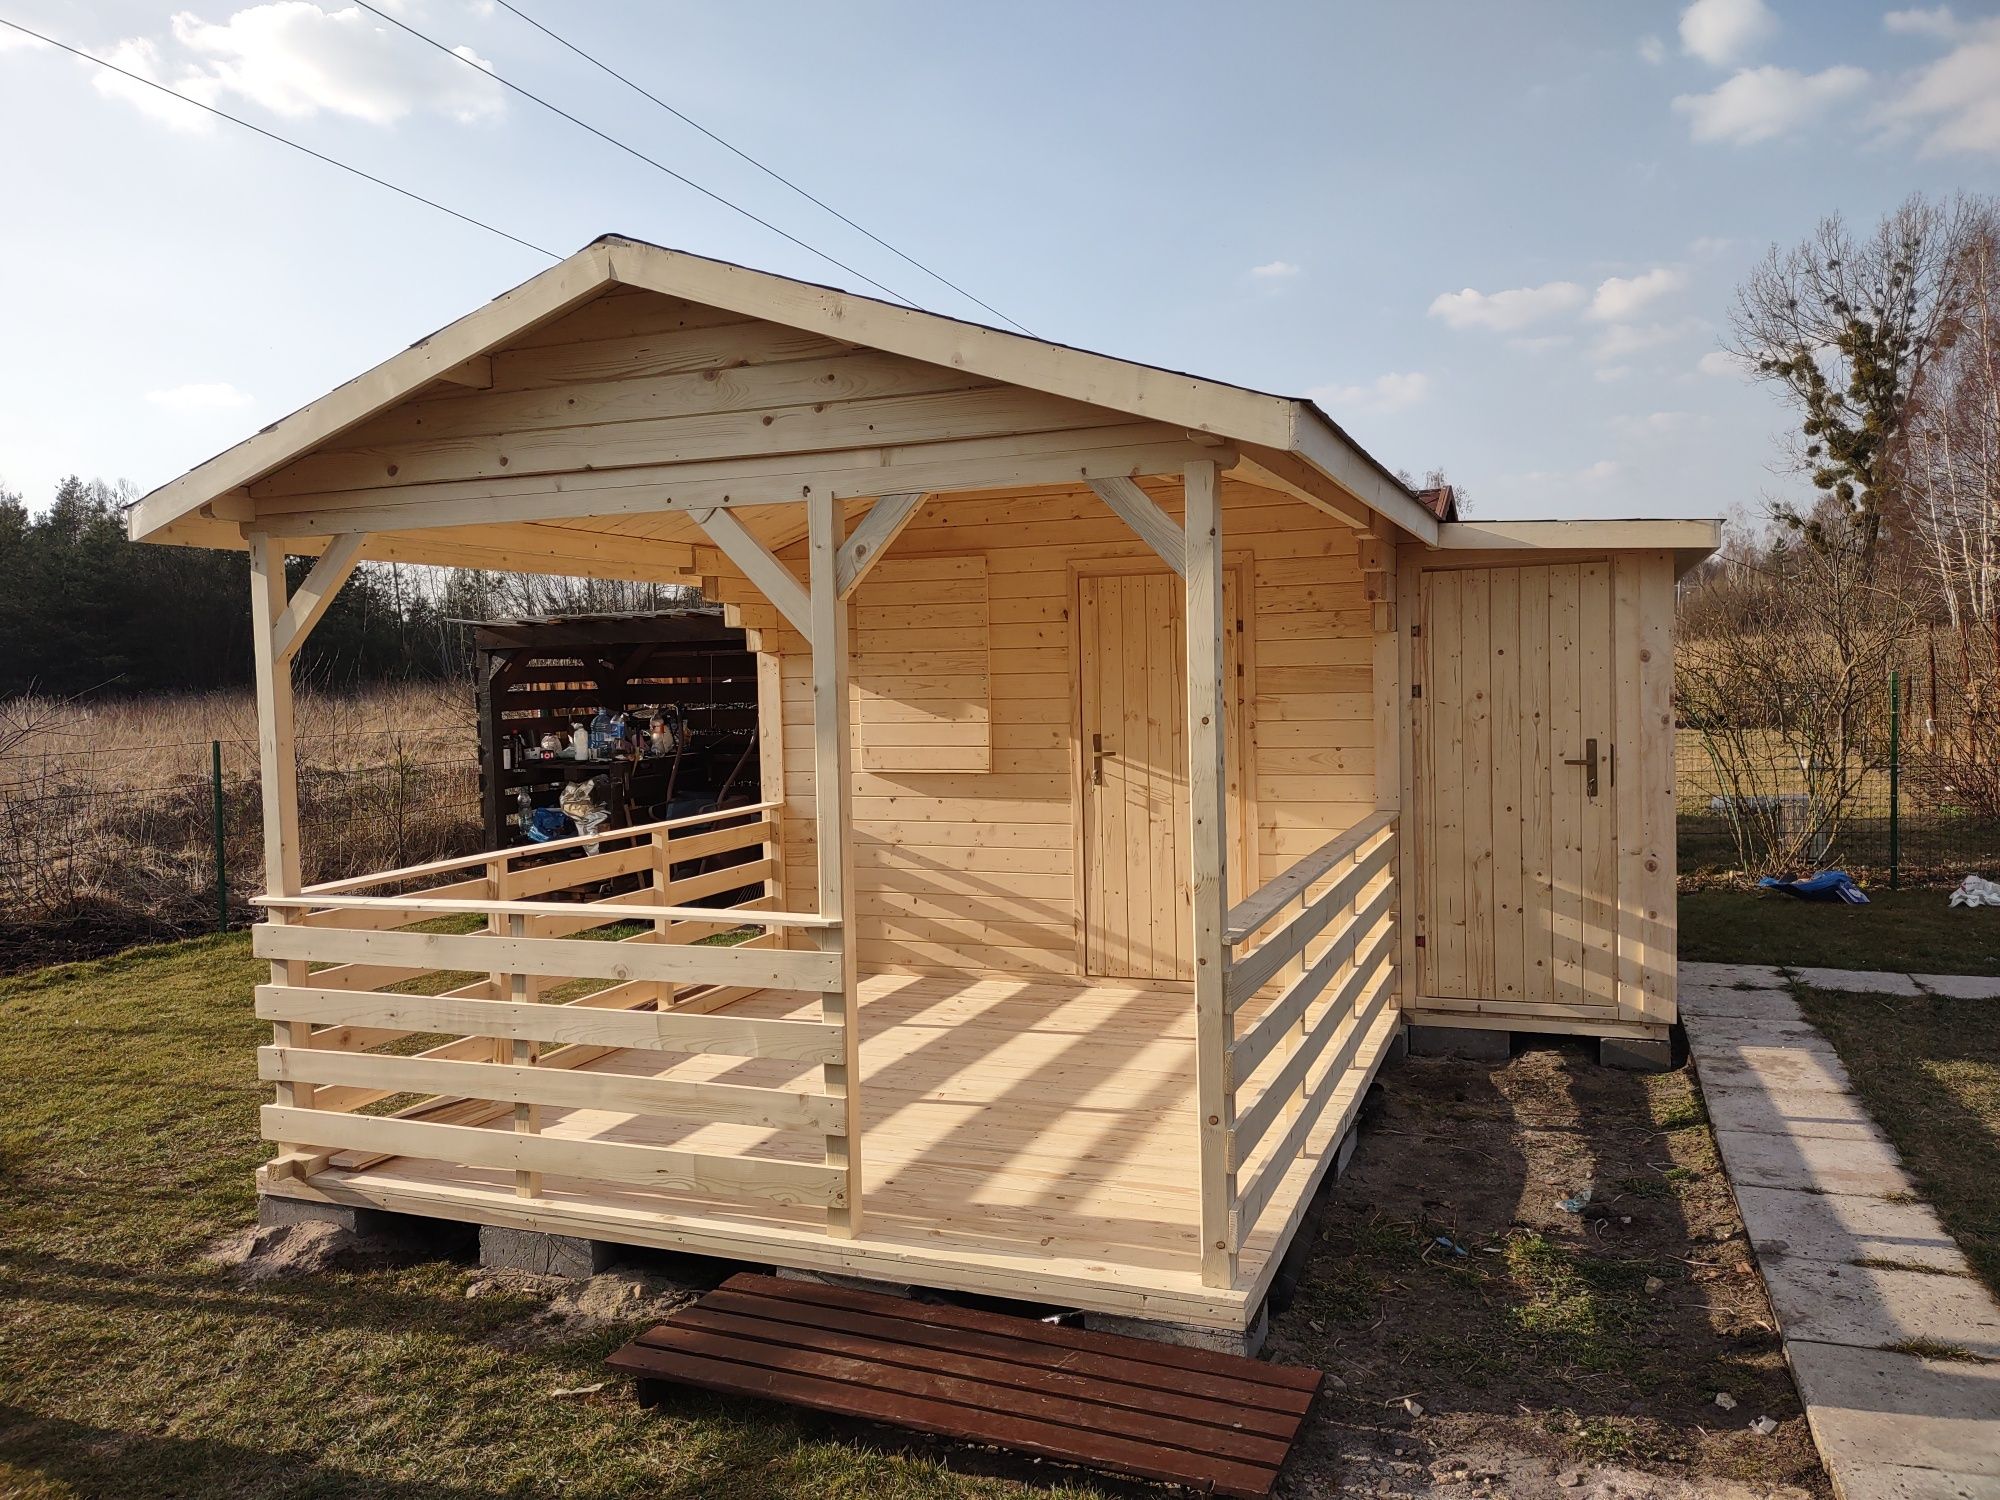 Domek dom ogrodowy drewniany JANOSIK, 21m2  Altana garaż wiata (Promoc